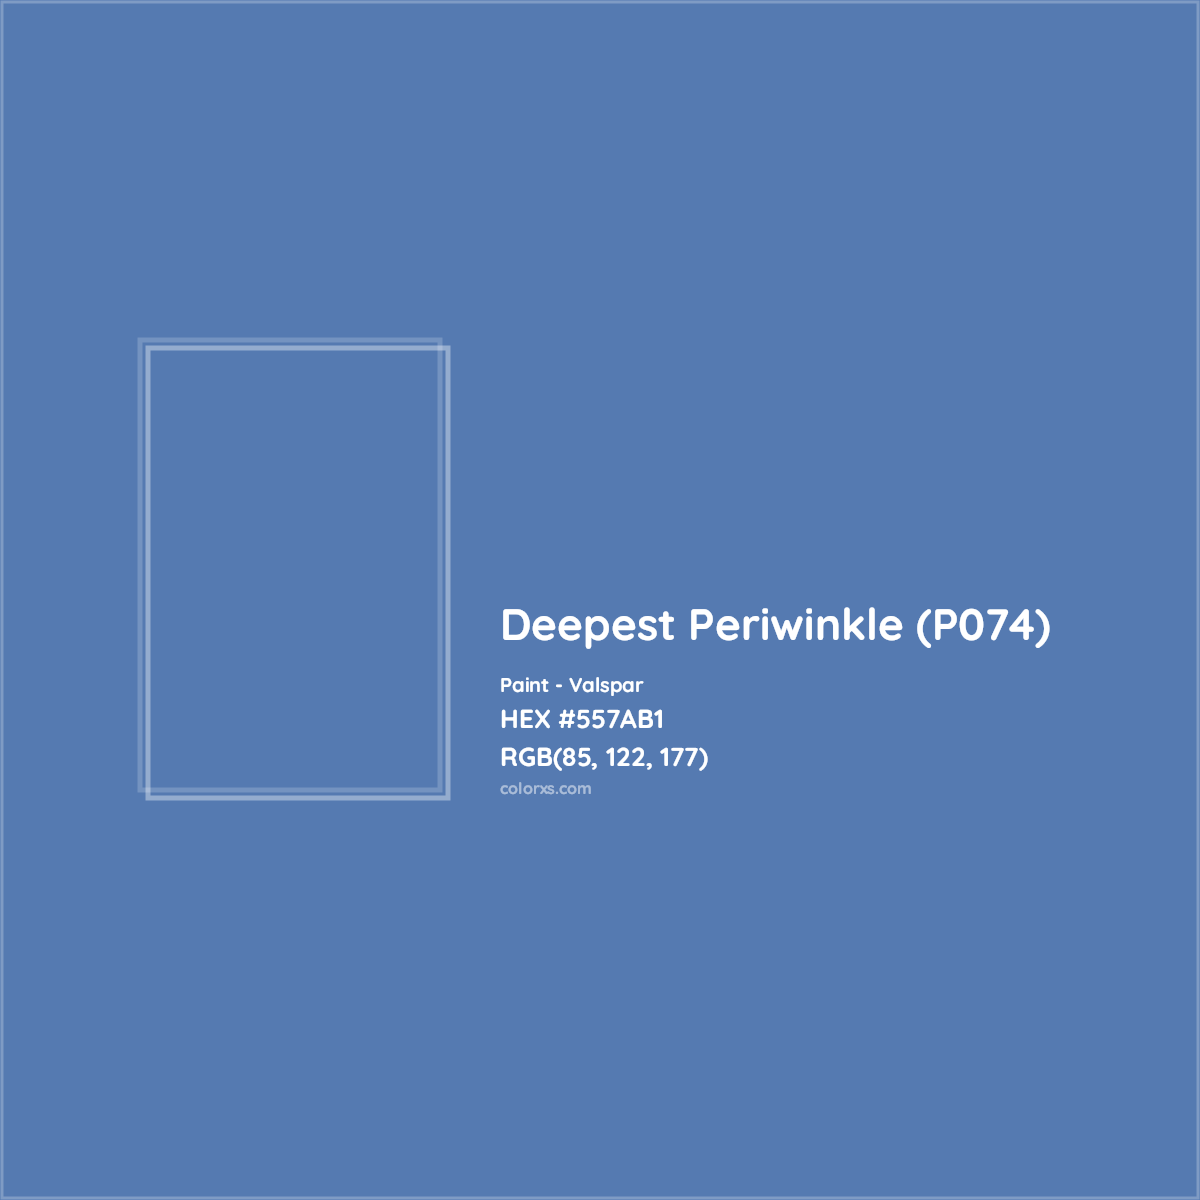 HEX #557AB1 Deepest Periwinkle (P074) Paint Valspar - Color Code